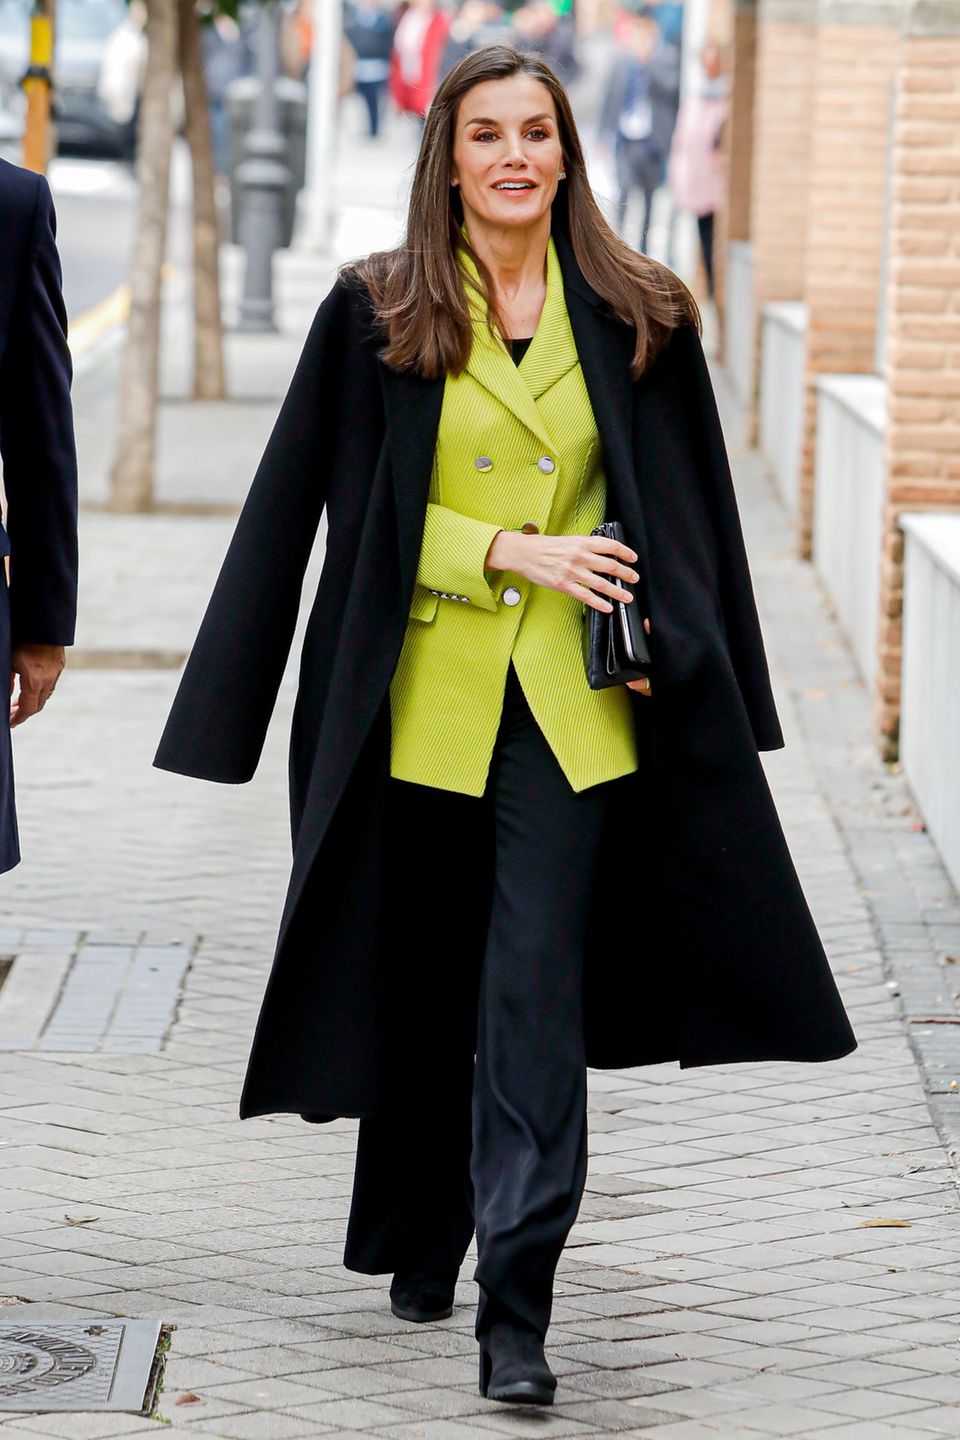 Königin Letizia besucht das Arbeitstreffen des Verwaltungsrates der spanischen Föderation für Seltene Krankheiten in Madrid und scheint den Frühling im Gepäck zu haben! Sie wertet ihren schlichten, schwarzen Look aus weiter Hose und Wollmantel mit einem knalligen Blazer auf, der sofort für gute Laune sorgt.